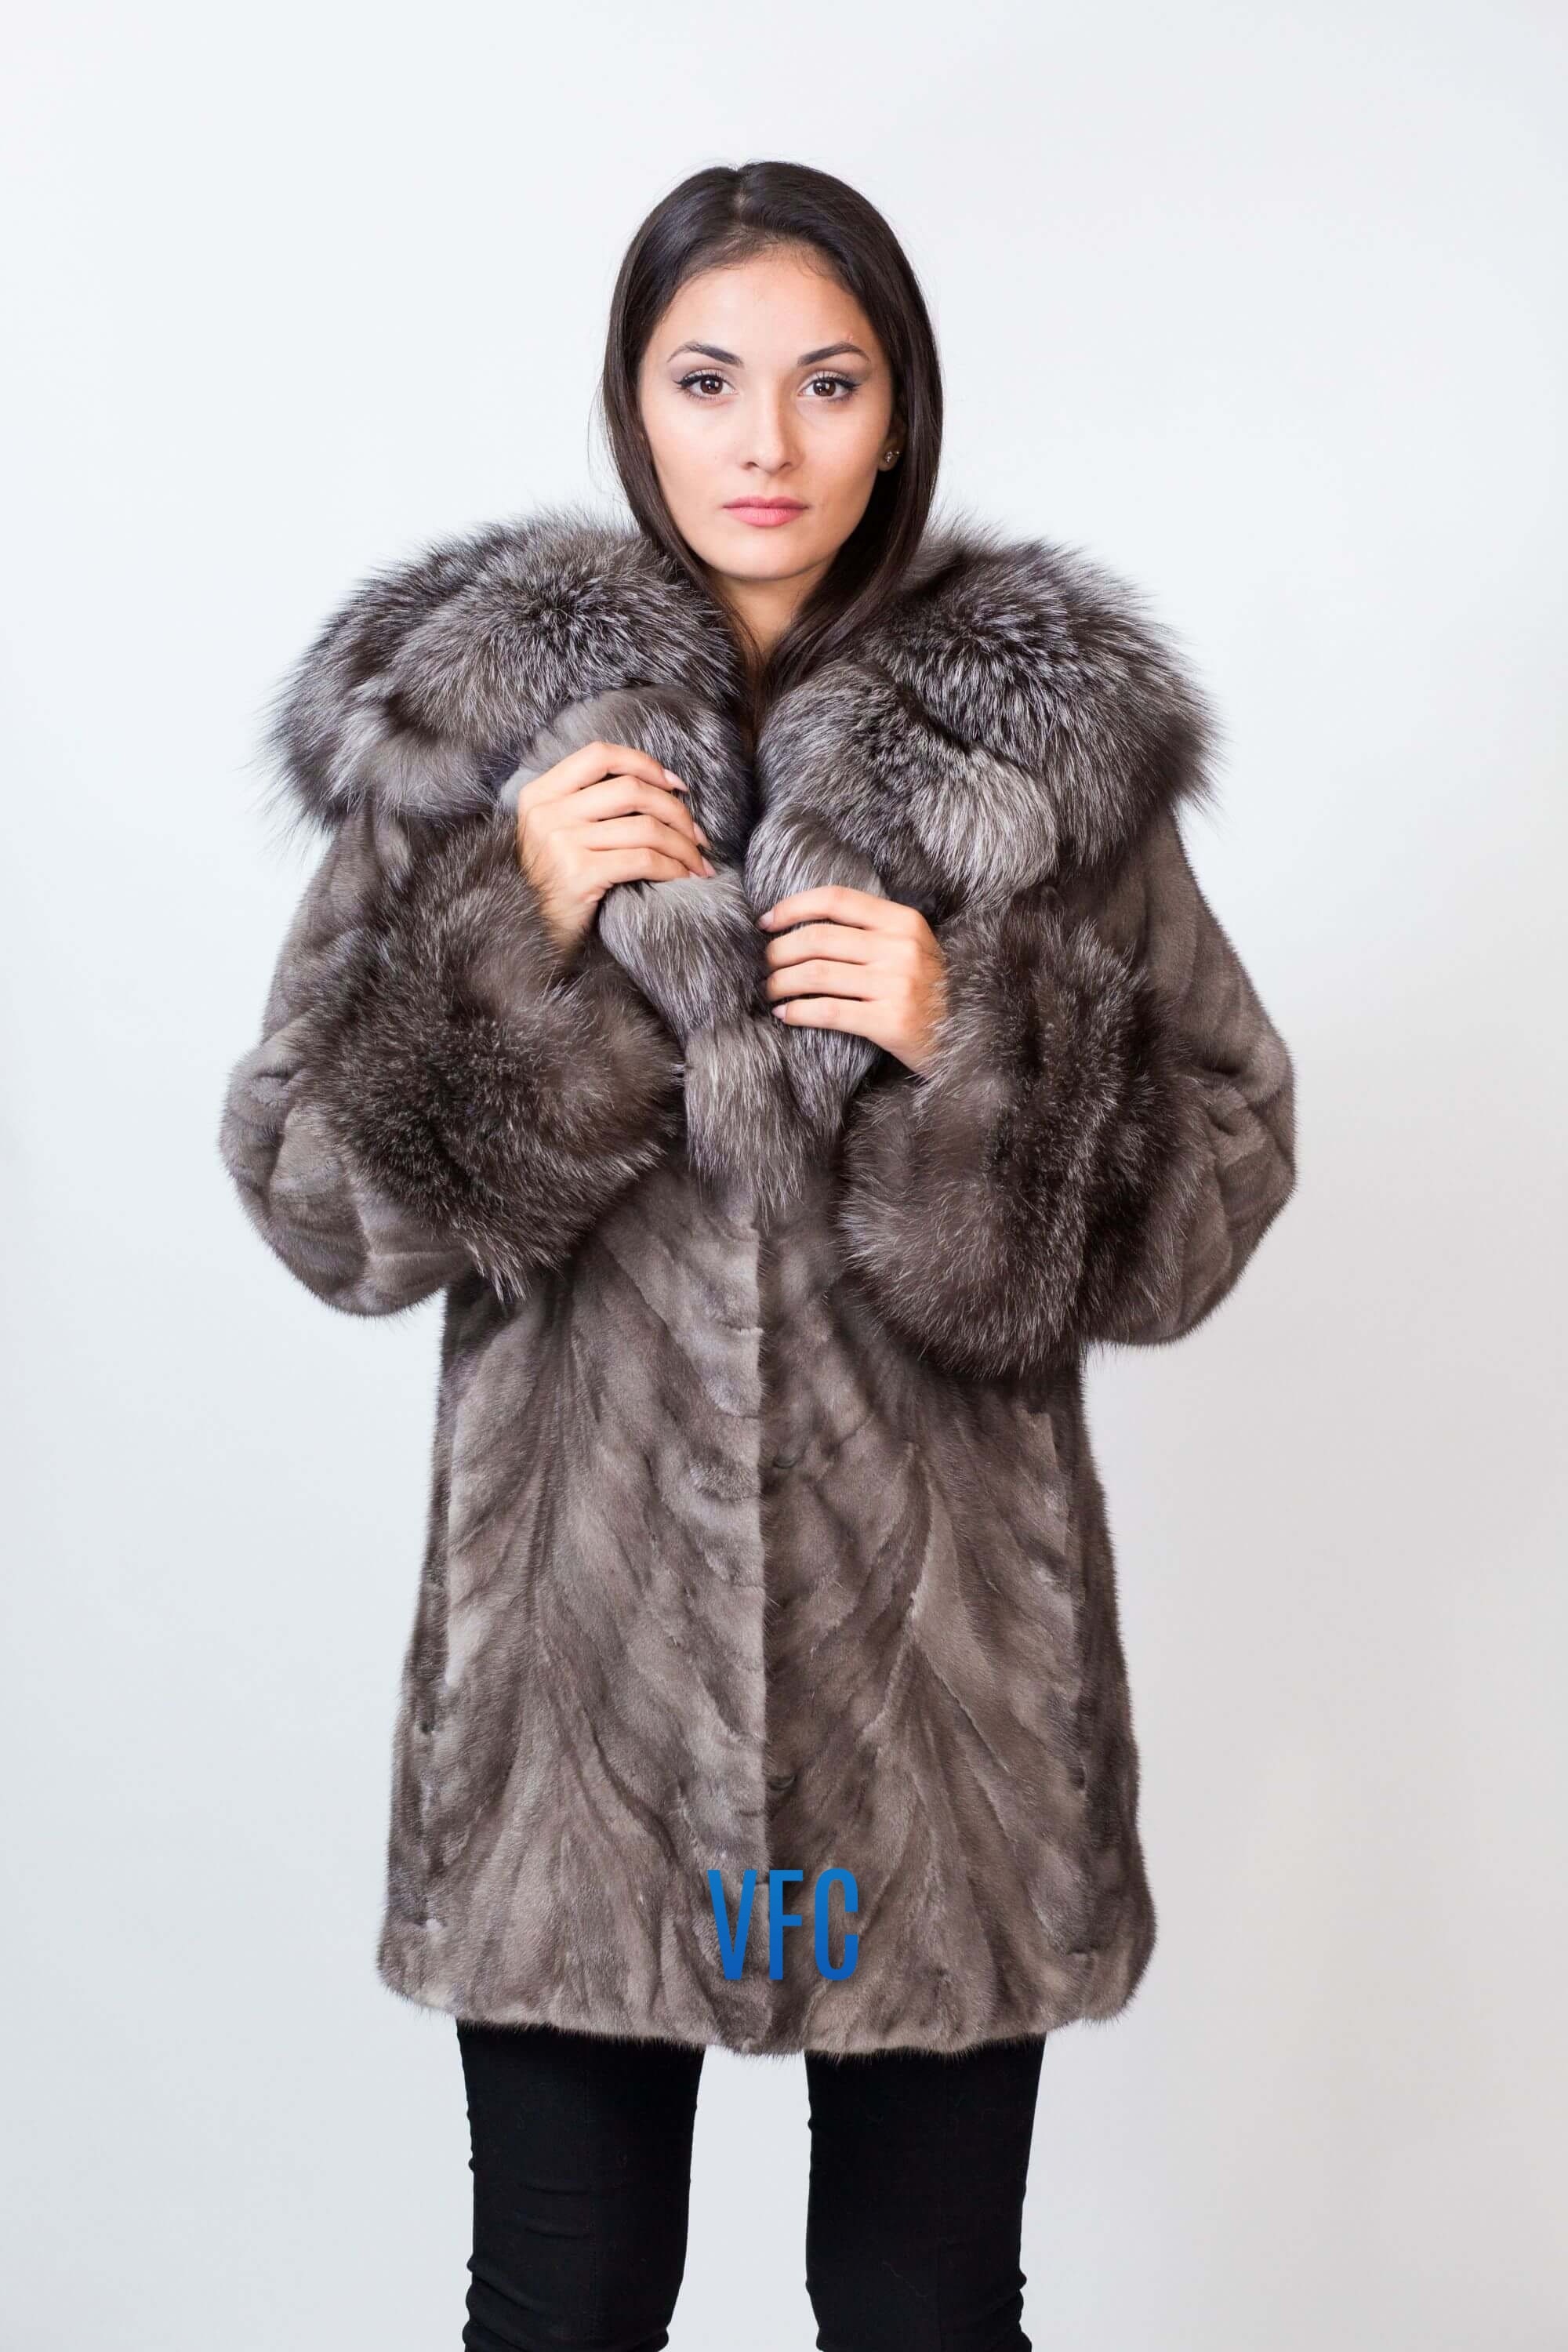 Silver Blue Full Skin Mink Fur Jacket With Hood Real Mink Fur -  Denmark